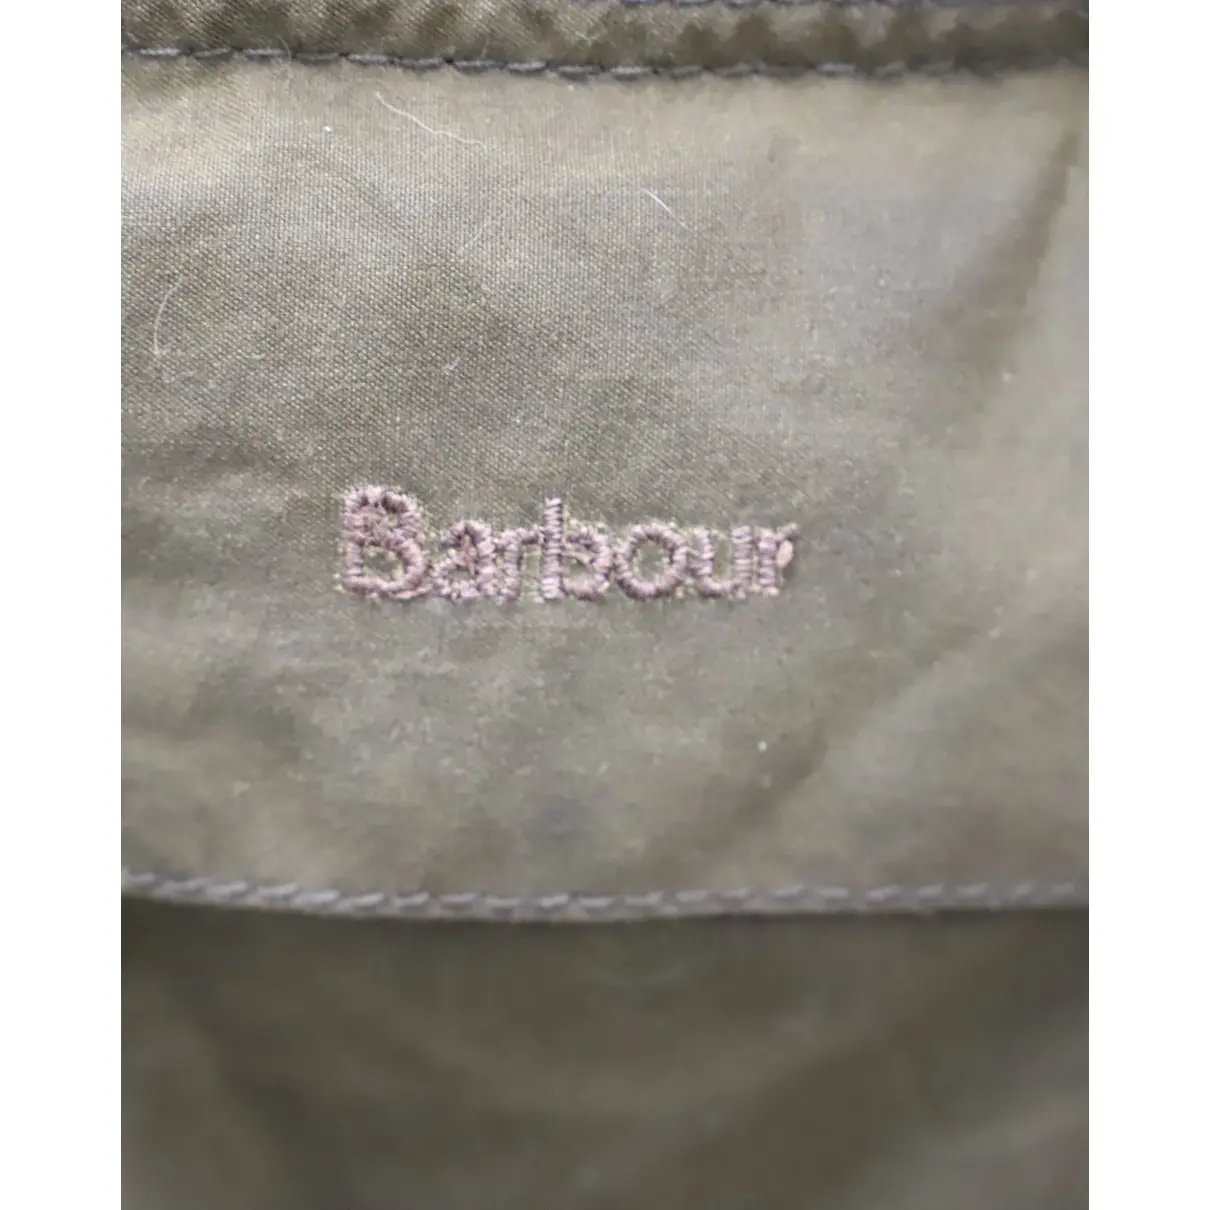 Jacket Barbour